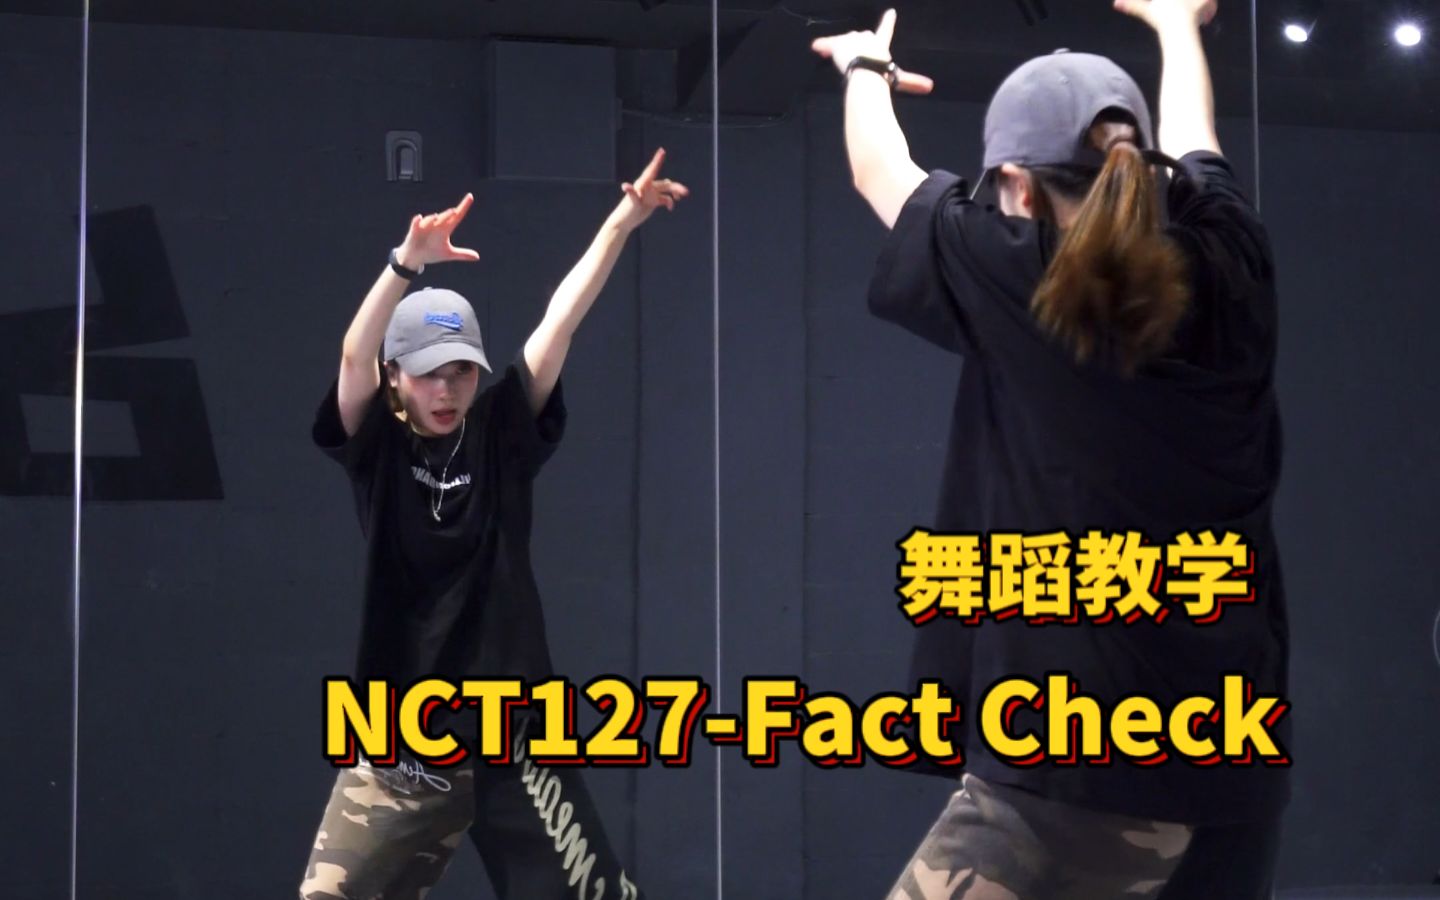 来练练脚法|舞蹈教学-FactCheck-NCT127